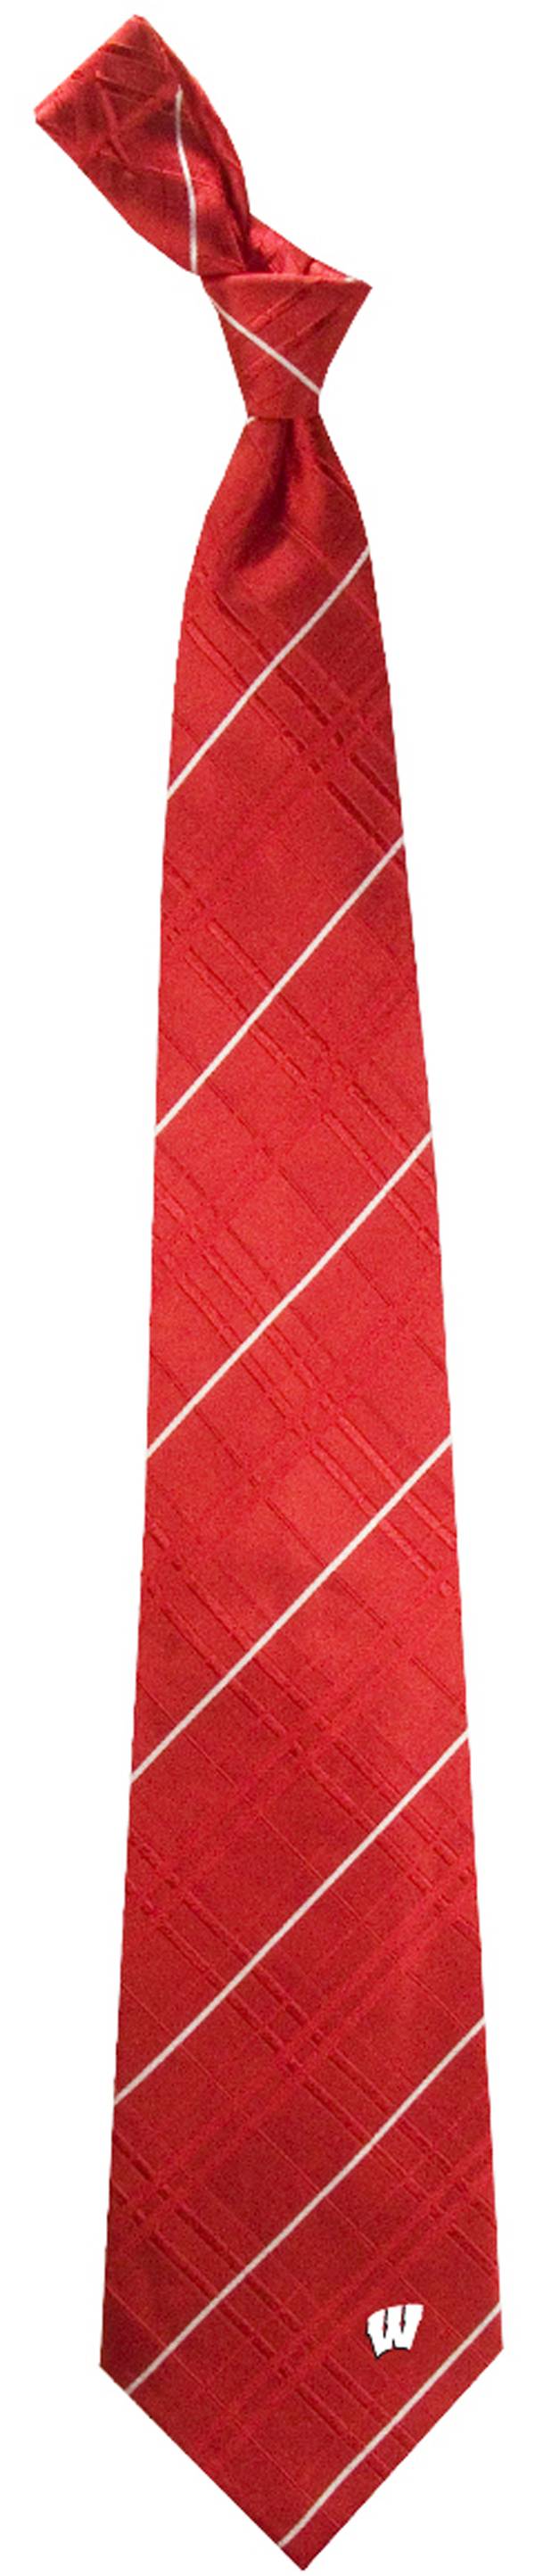 Michigan State Oxford Stripe Woven Silk Necktie